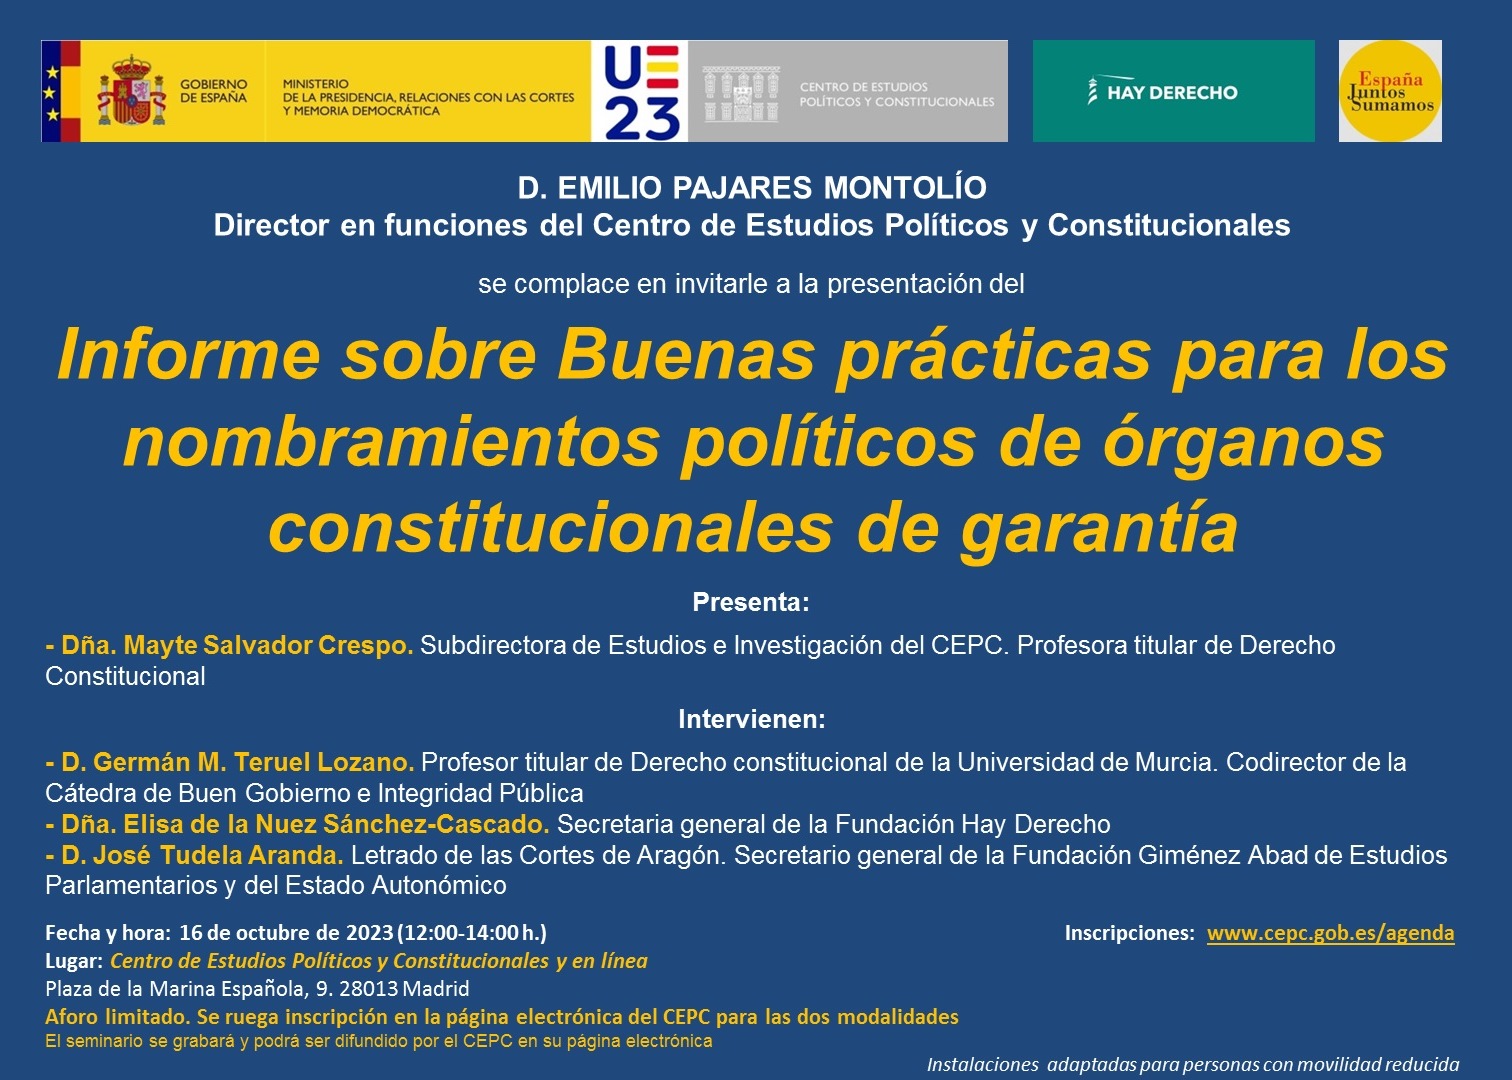  Presentación del "Informe sobre Buenas prácticas para los nombramientos políticos de órganos constitucionales de garantía"